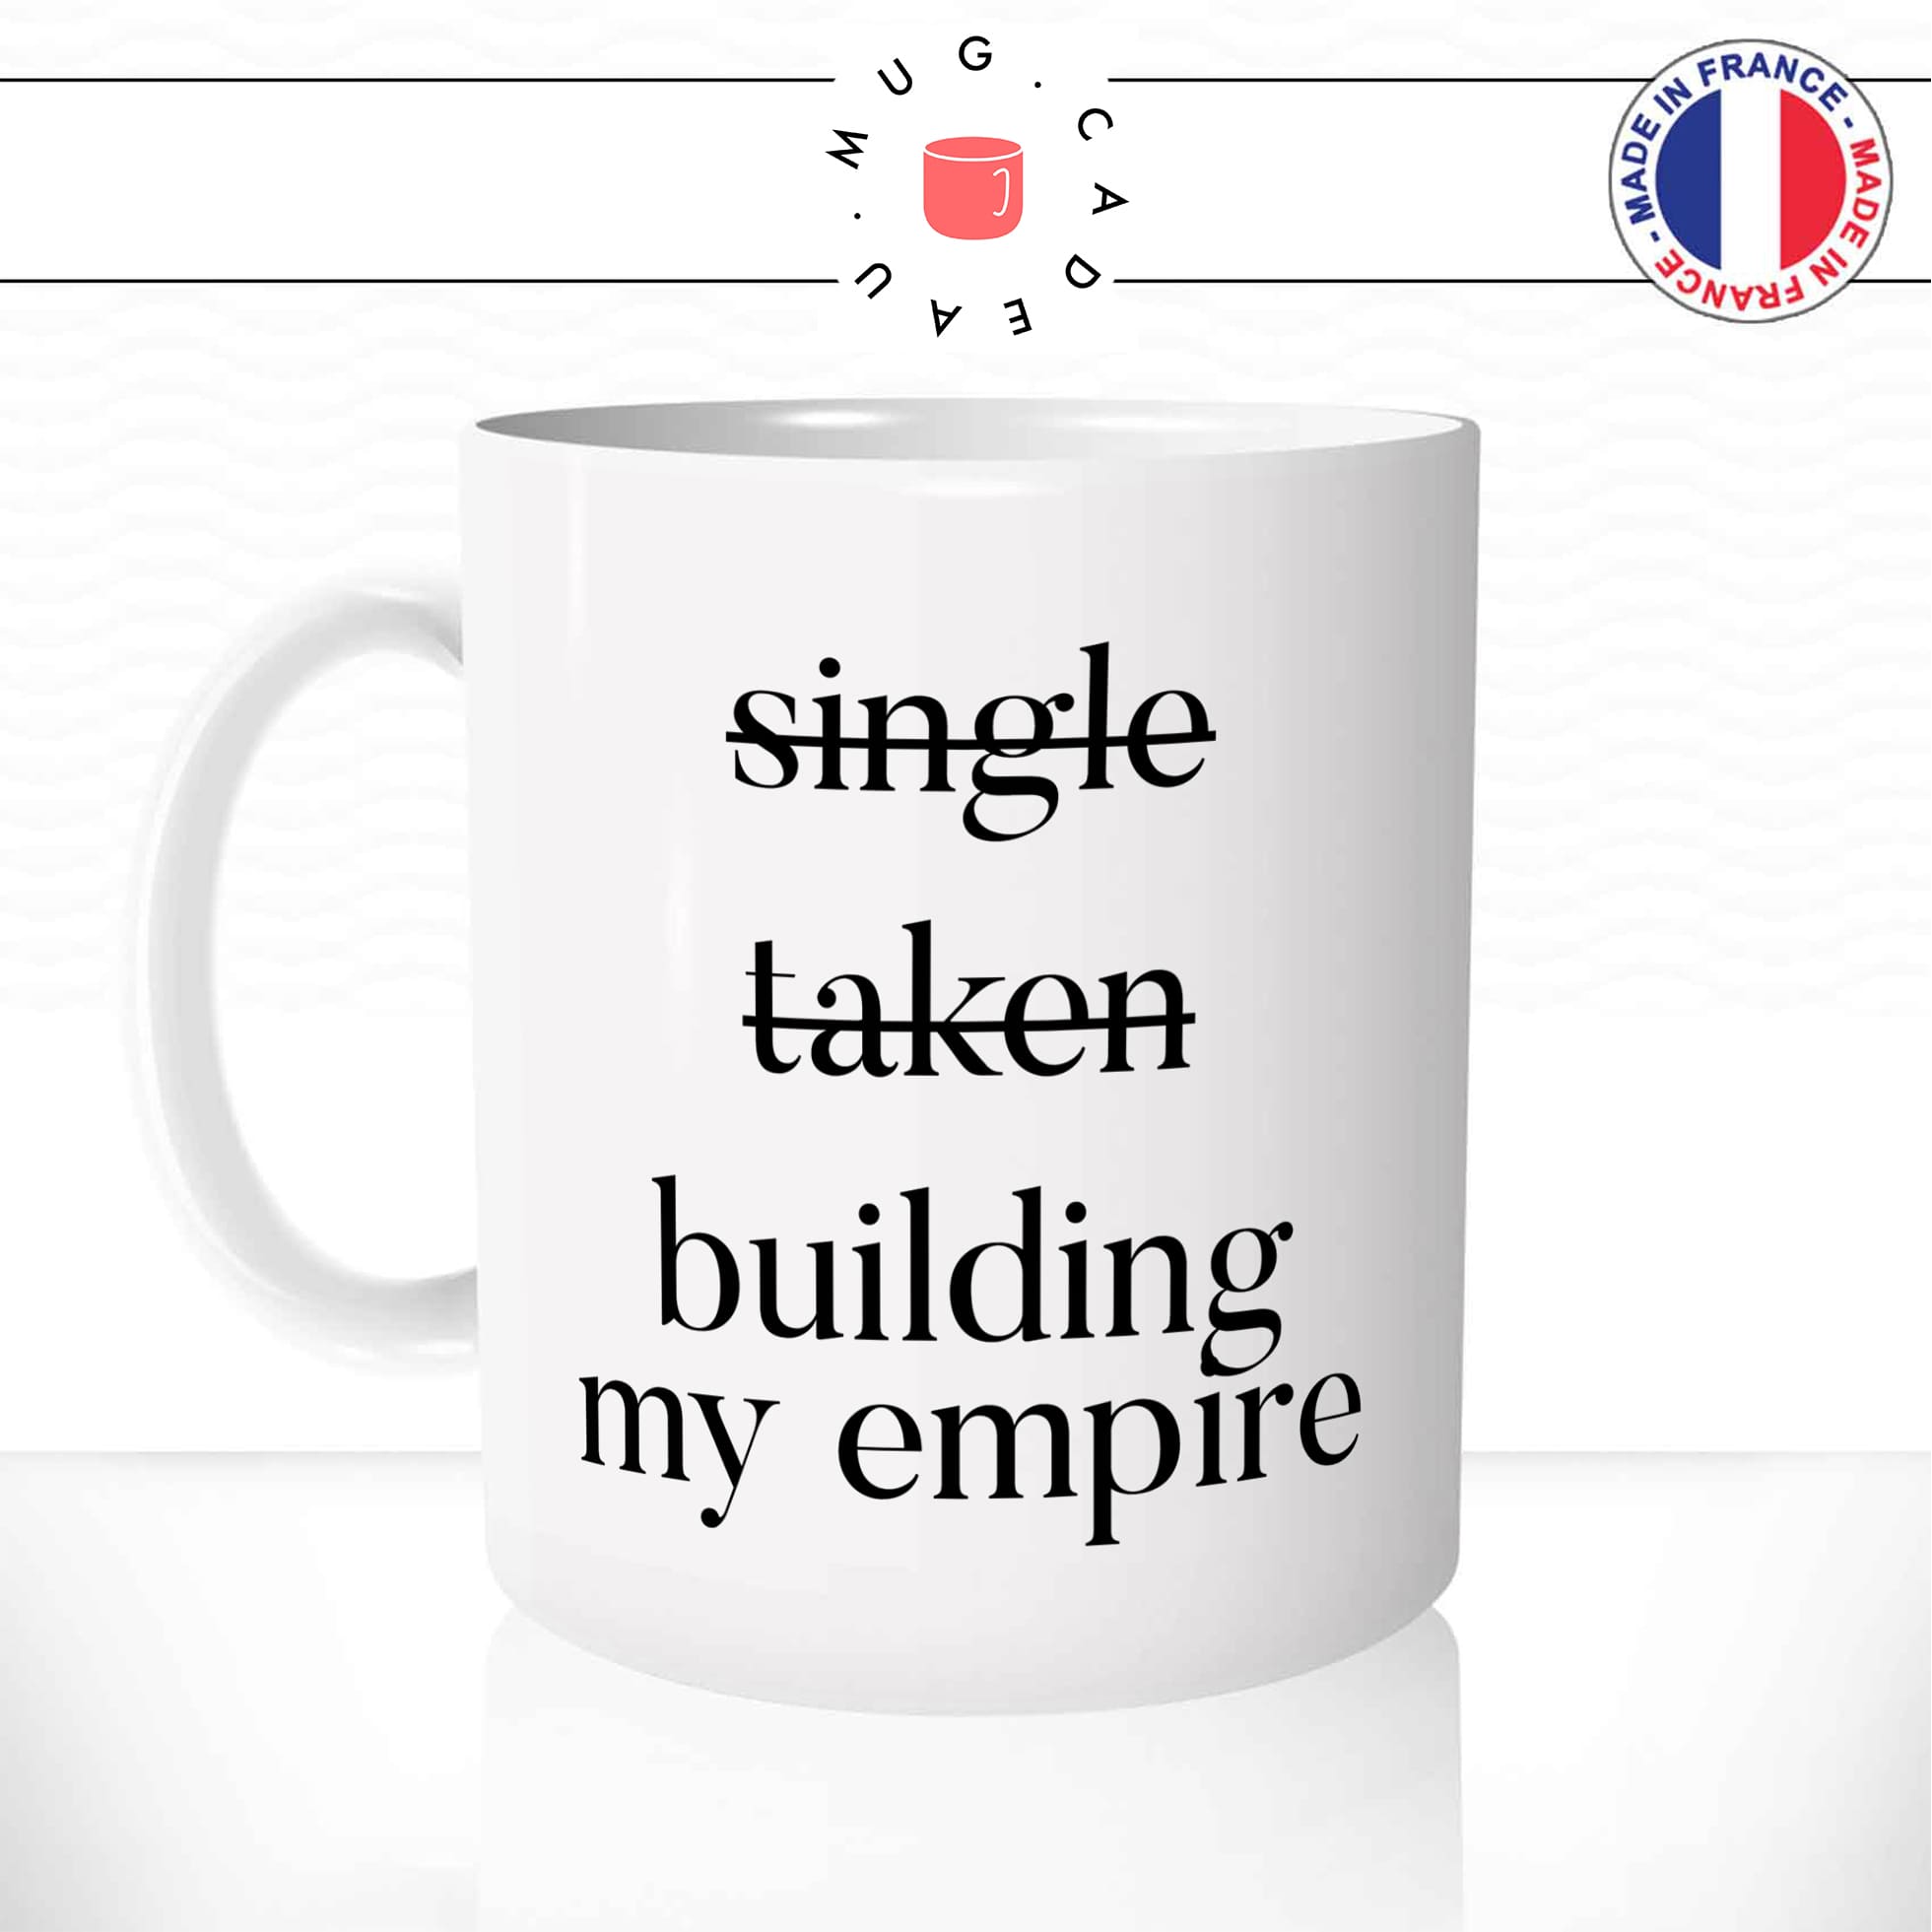 Mug Building My Empire